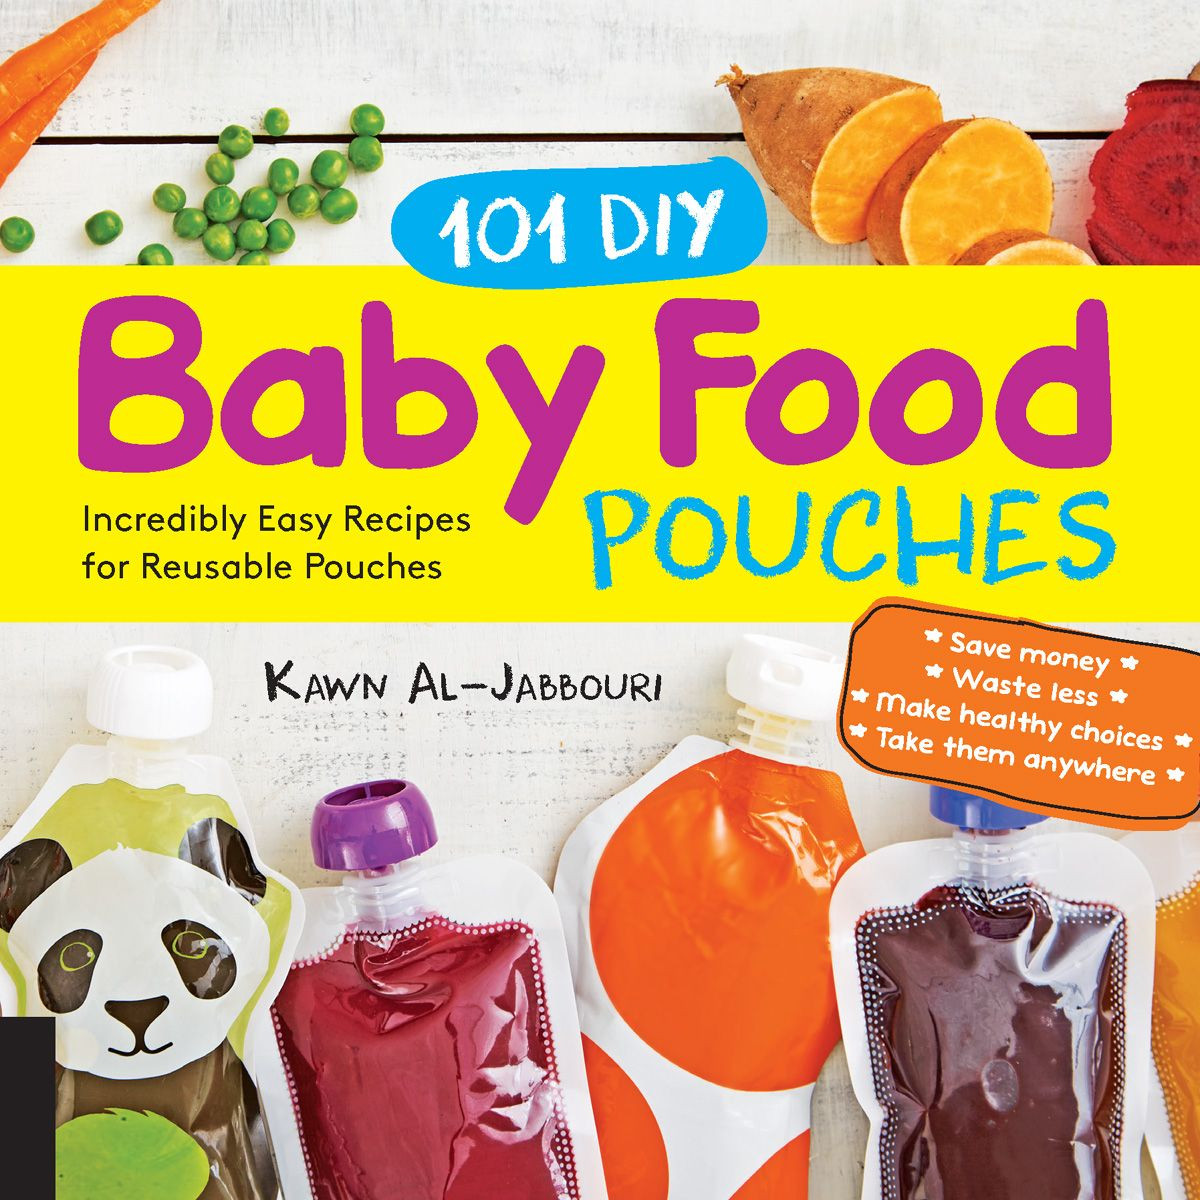 DIY Baby Food Pouches
 101 DIY Baby Food Pouches eBook by Kawn Al jabbouri